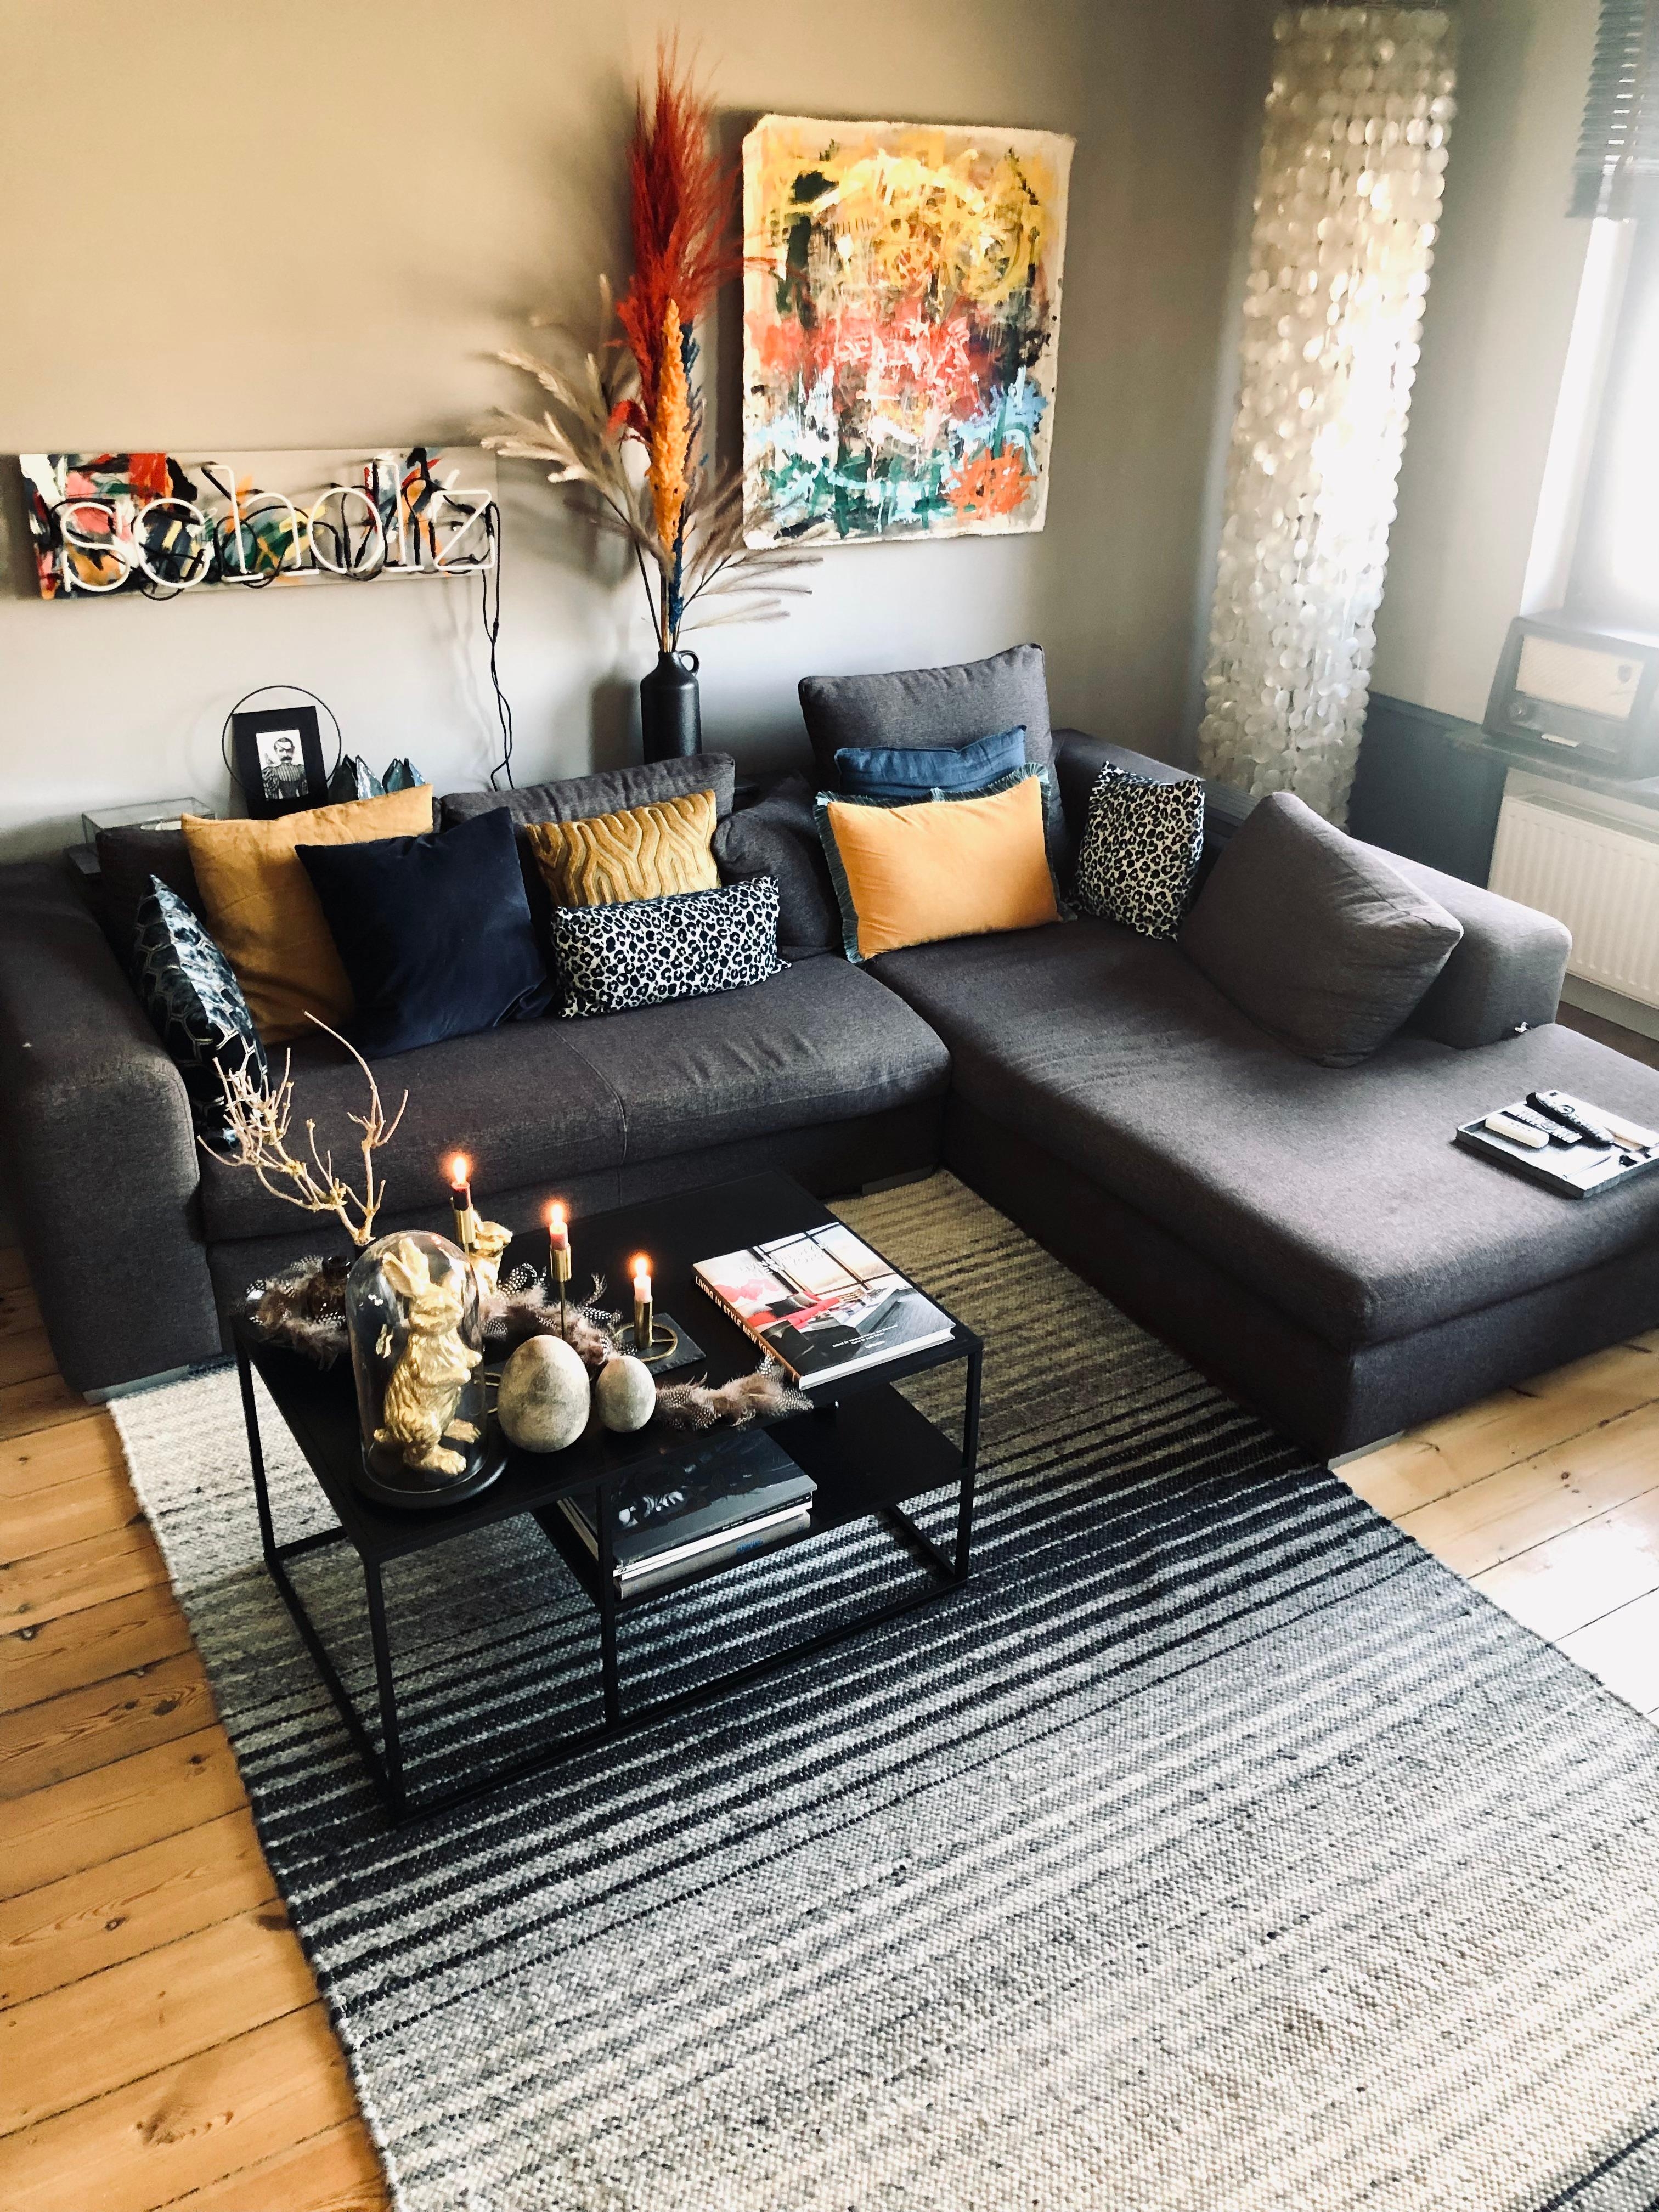 Neuer Teppich für den Couchbereich! #couchcummunity #couchstyle #wohnzimmer #teppich #couch